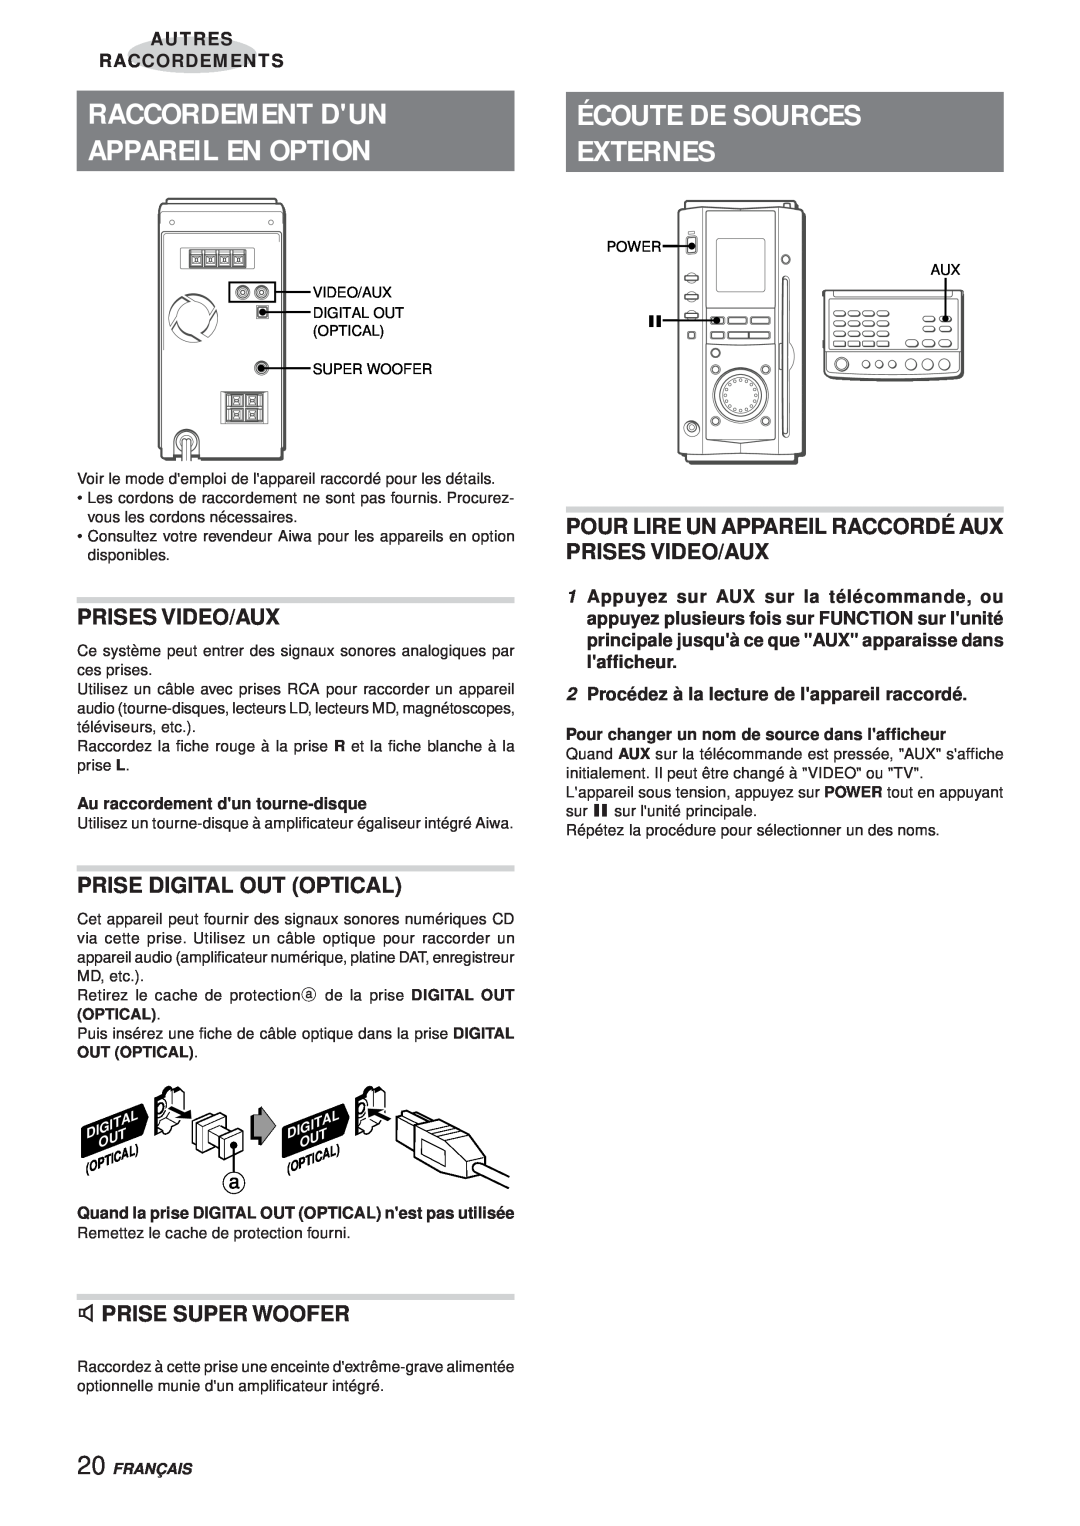 Aiwa XR-MS3 manual Raccordement Dun, Appareil En Option, Externes, Prises Video/Aux, Prise Digital Out Optical, Français 